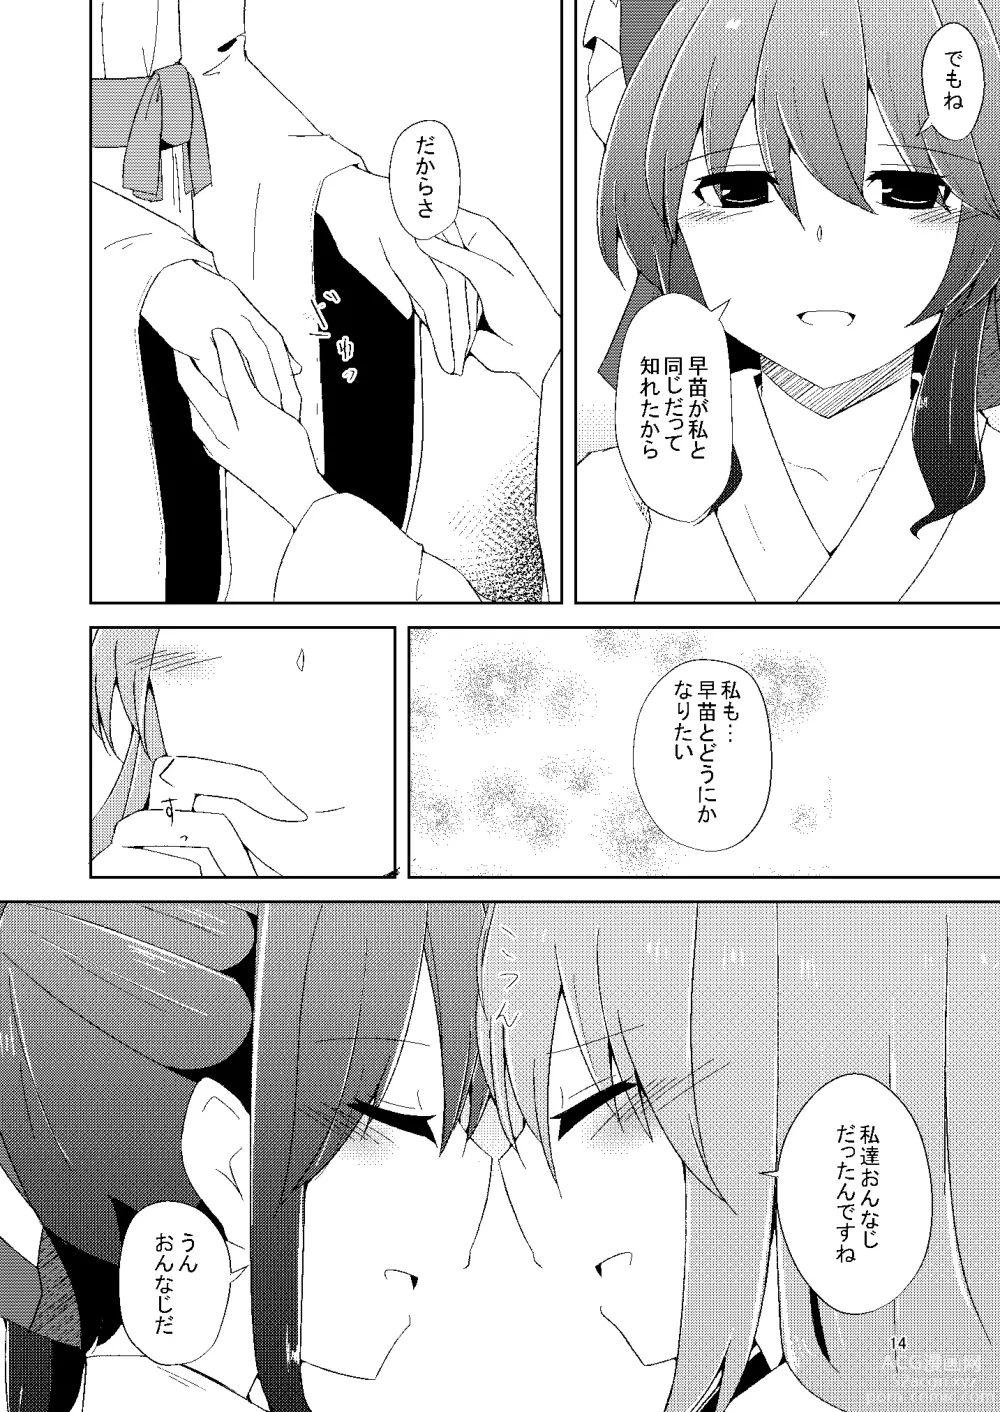 Page 13 of doujinshi Onaji desu ne